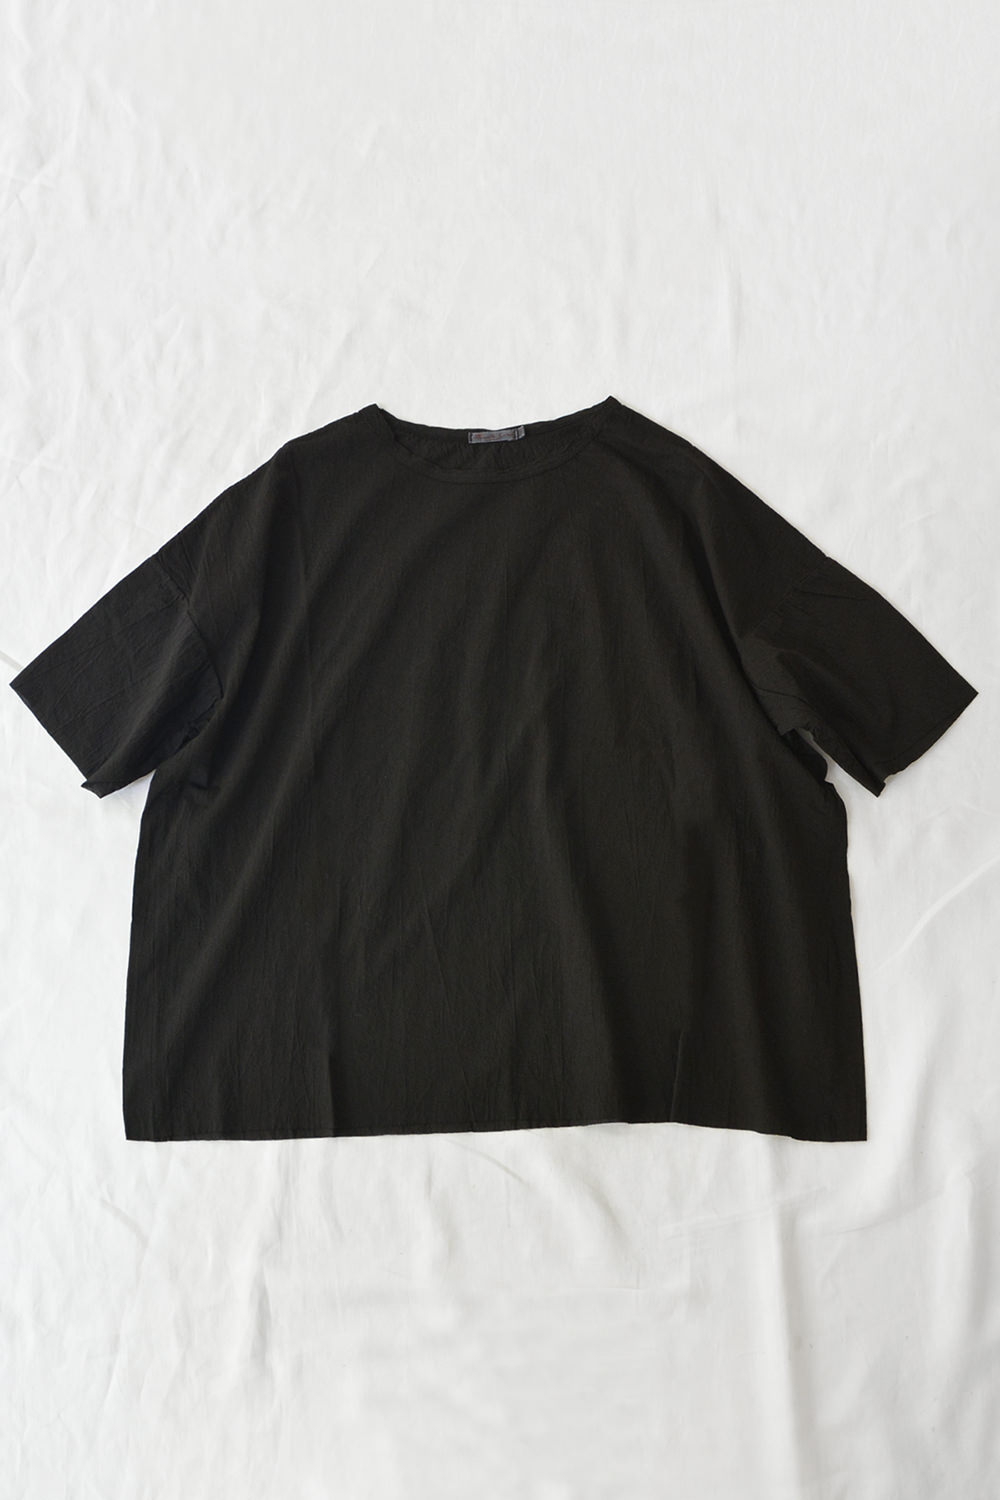 Manuelle Guibal Oversize Cotton T-shirt Black Top Picture